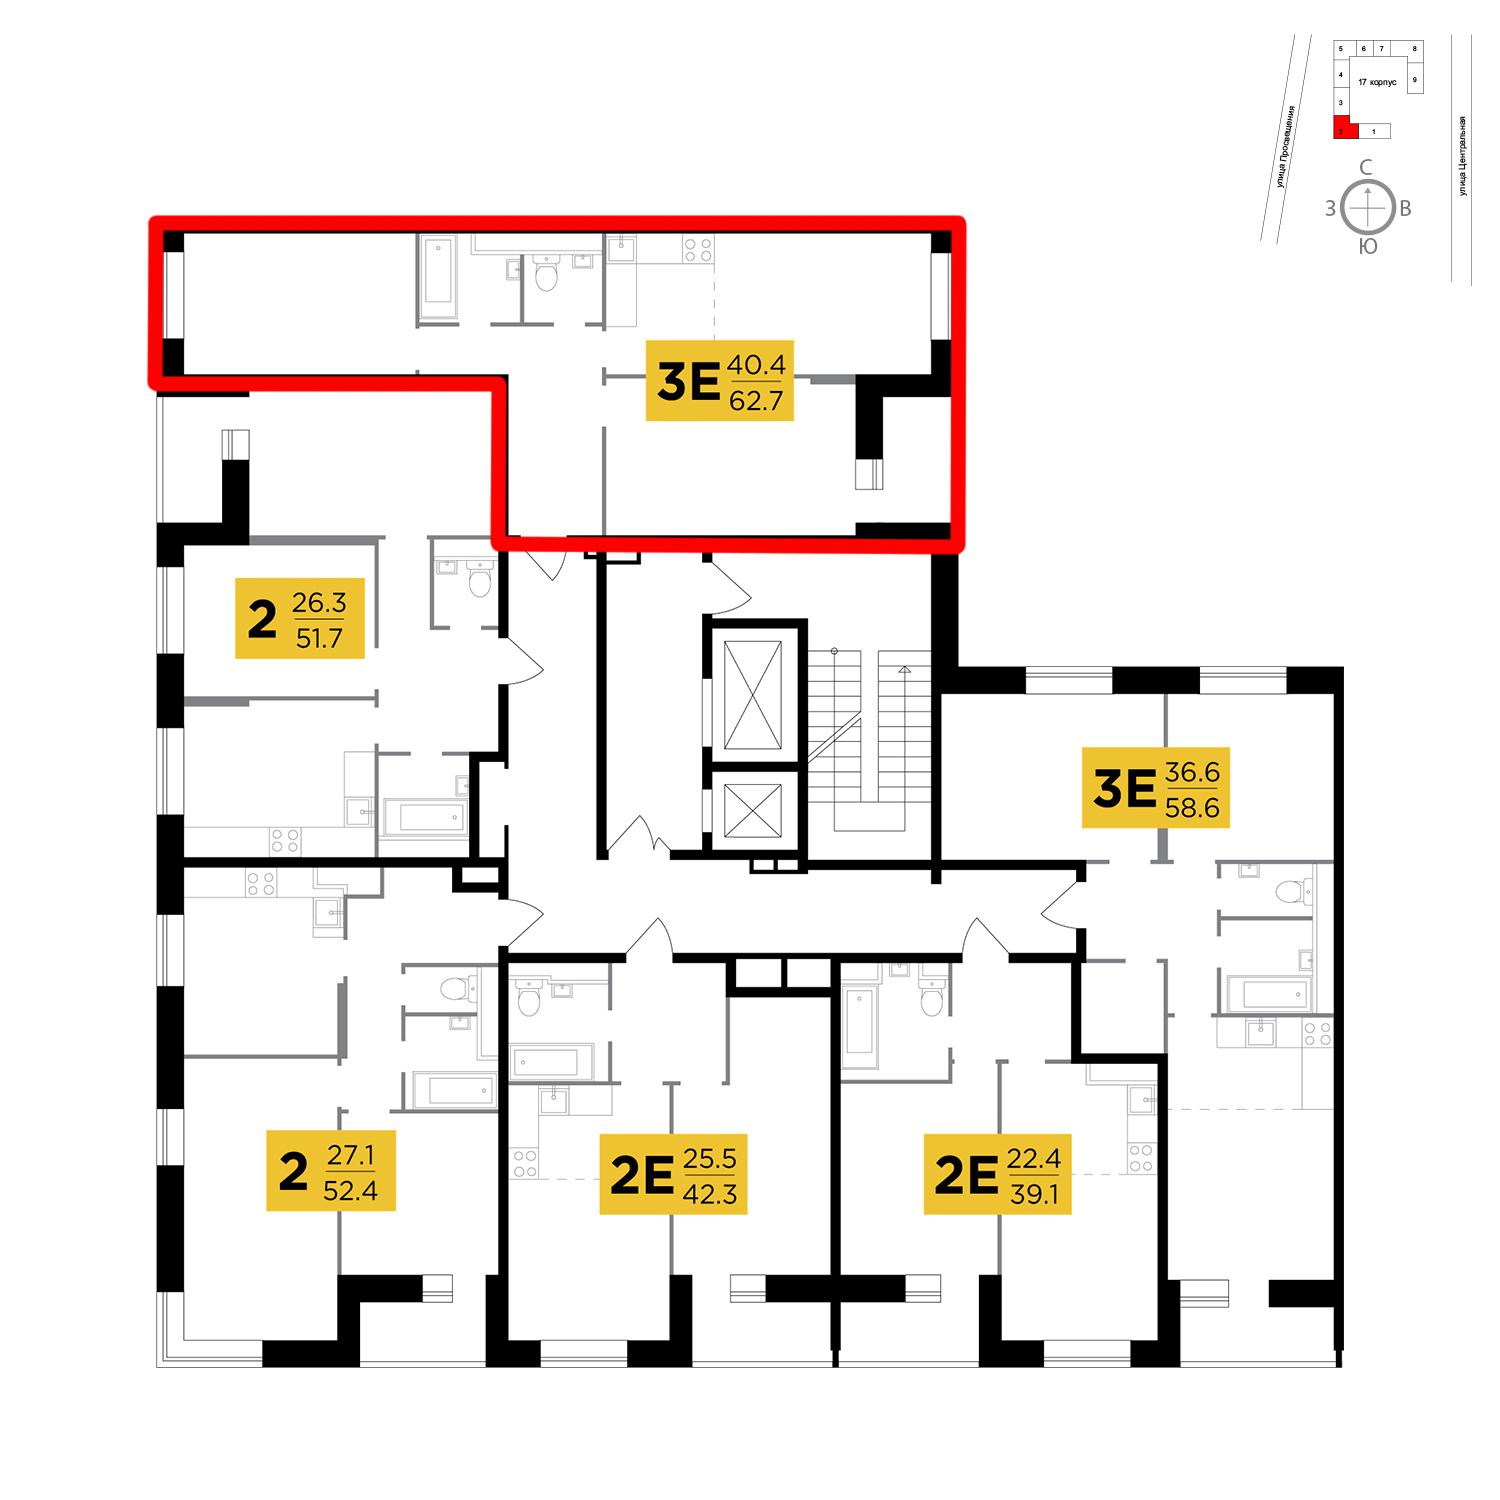 Продаётся 3-комнатная квартира в новостройке 62.7 кв.м. этаж 14/16 за 7 755 941 руб 